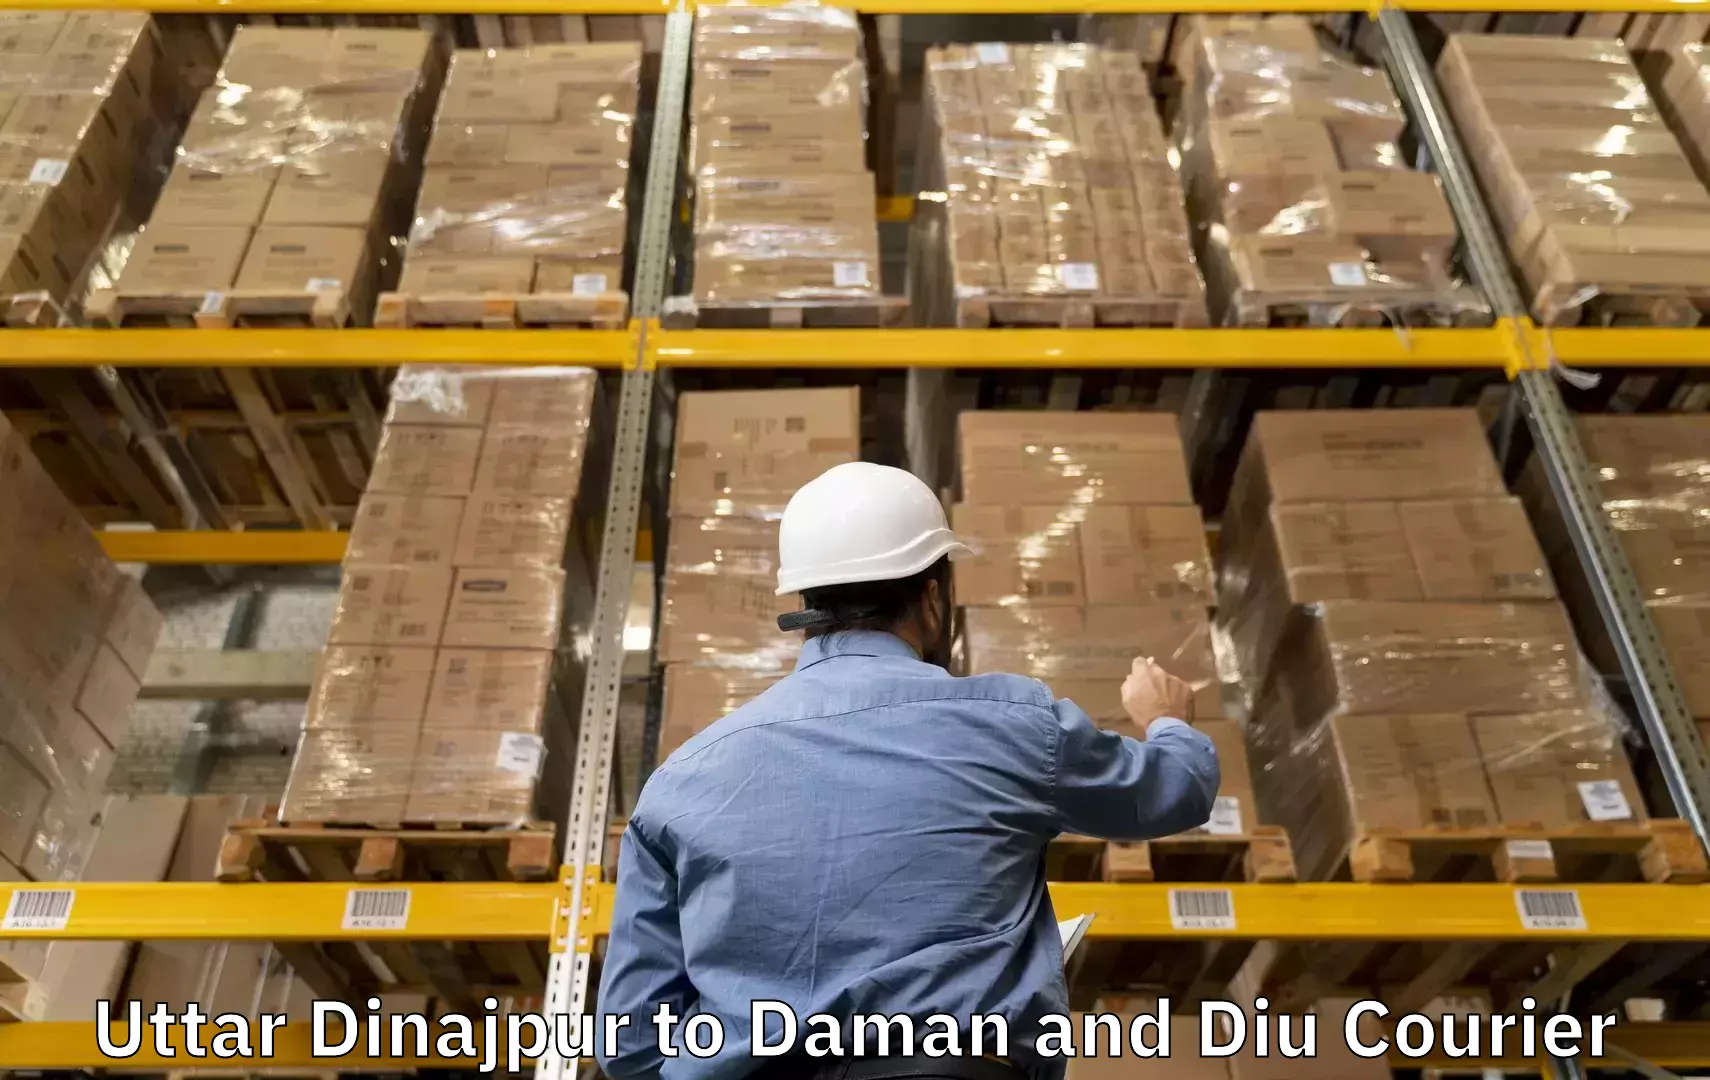 Luggage transfer service Uttar Dinajpur to Diu